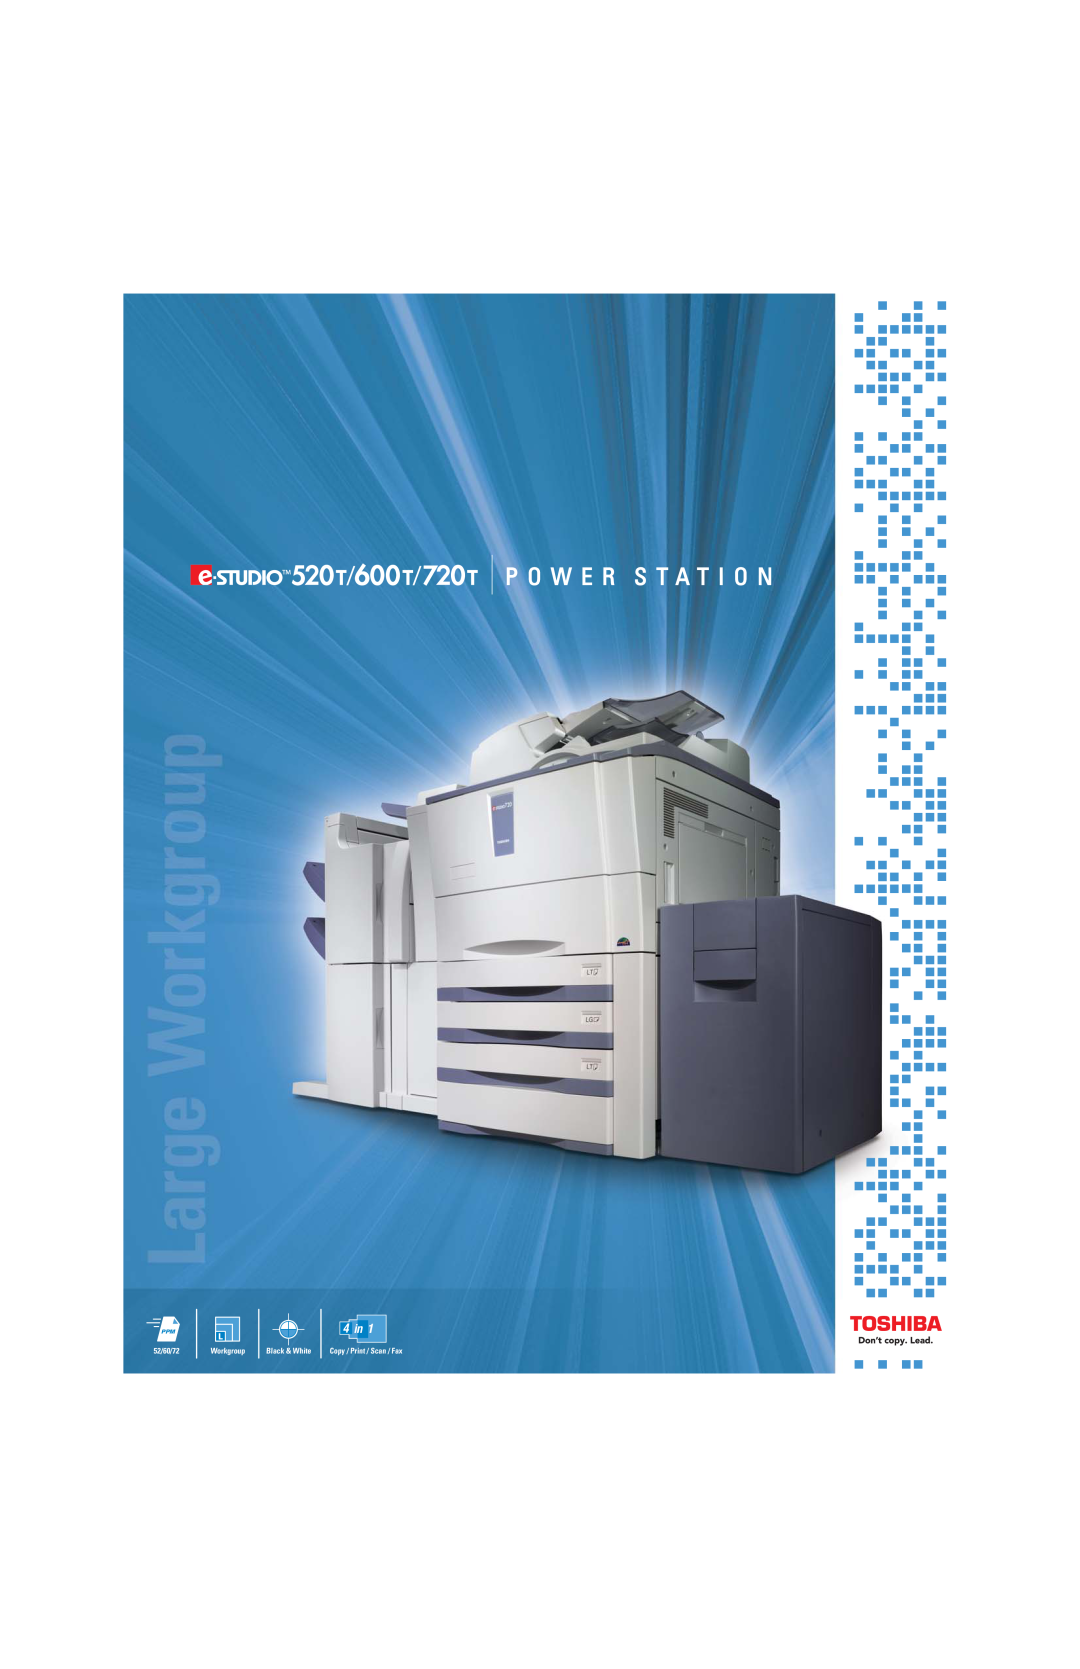 Toshiba 520T, 720T manual 4 in, P O W E R S T A T I O N, 52/60/72, Workgroup, Black & White, Copy / Print / Scan / Fax 